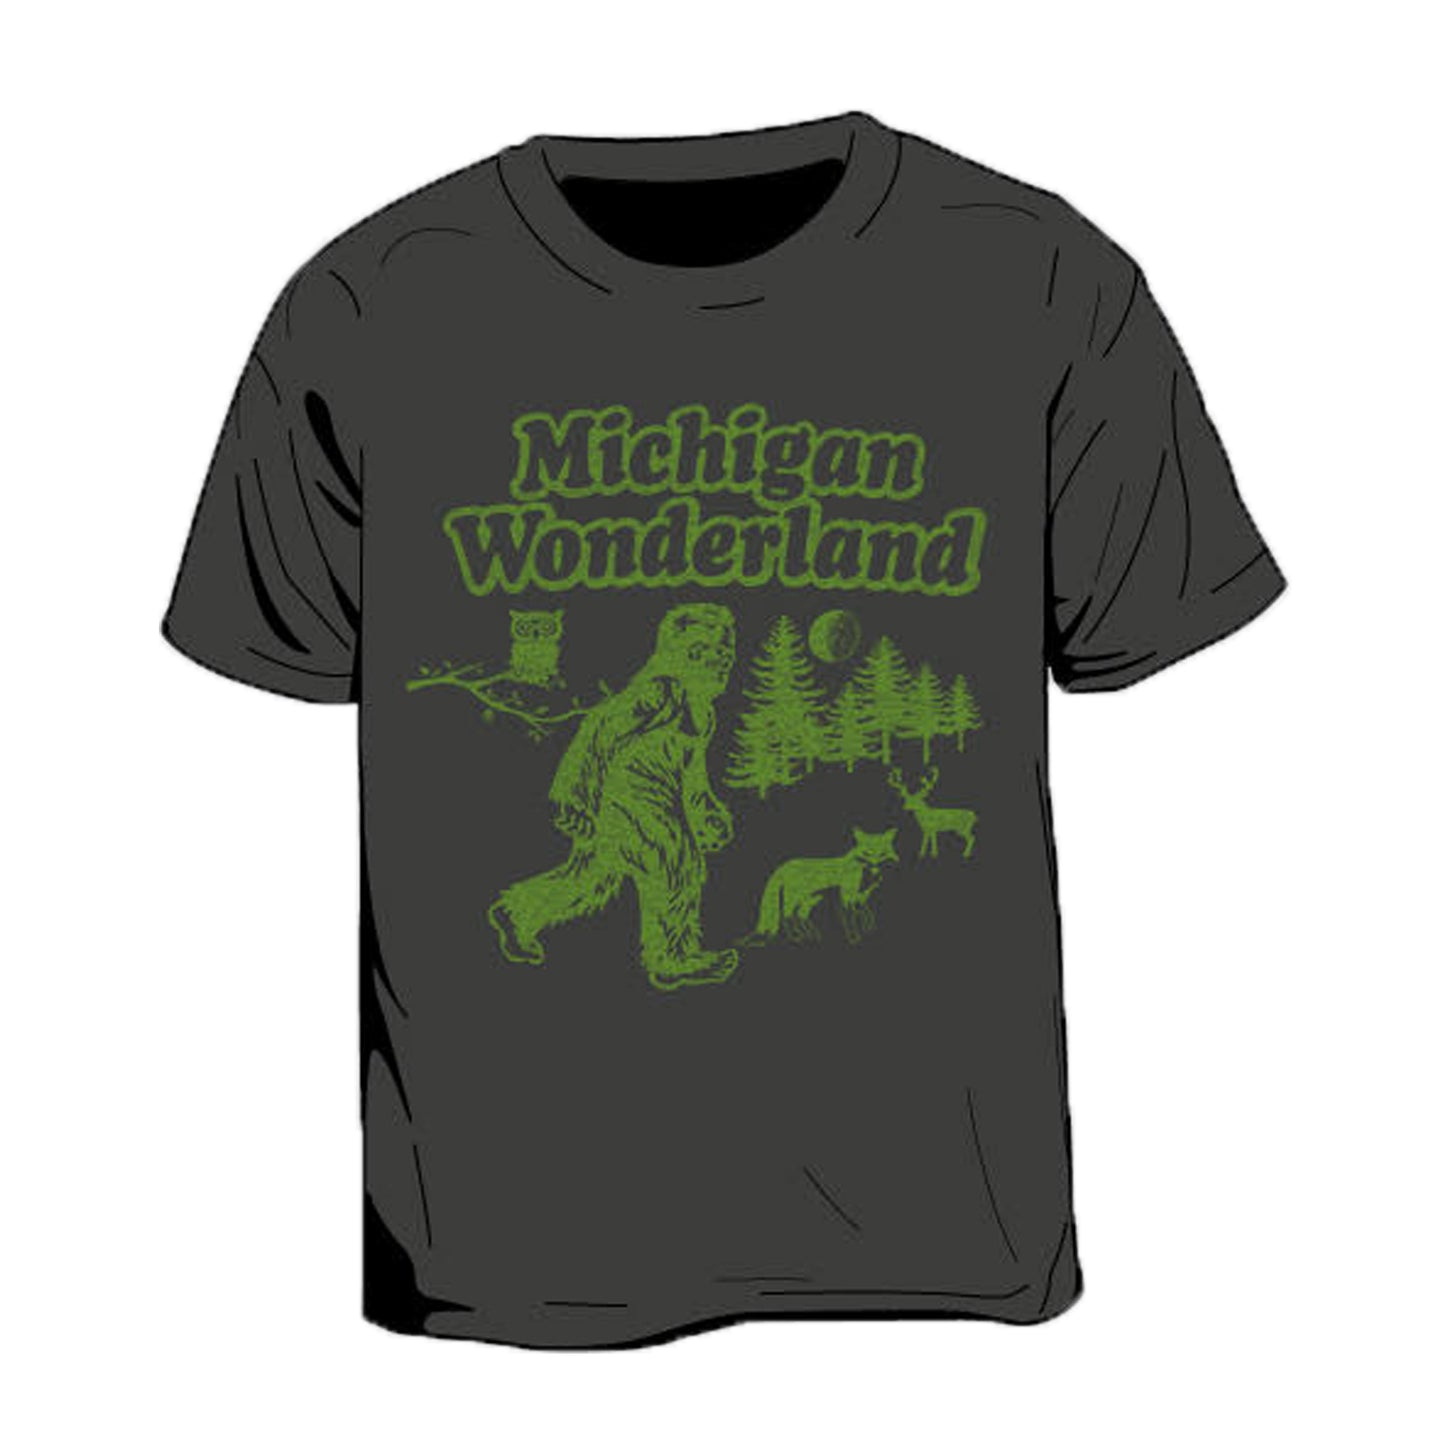 Michigan Wonderland Kid's T-Shirt